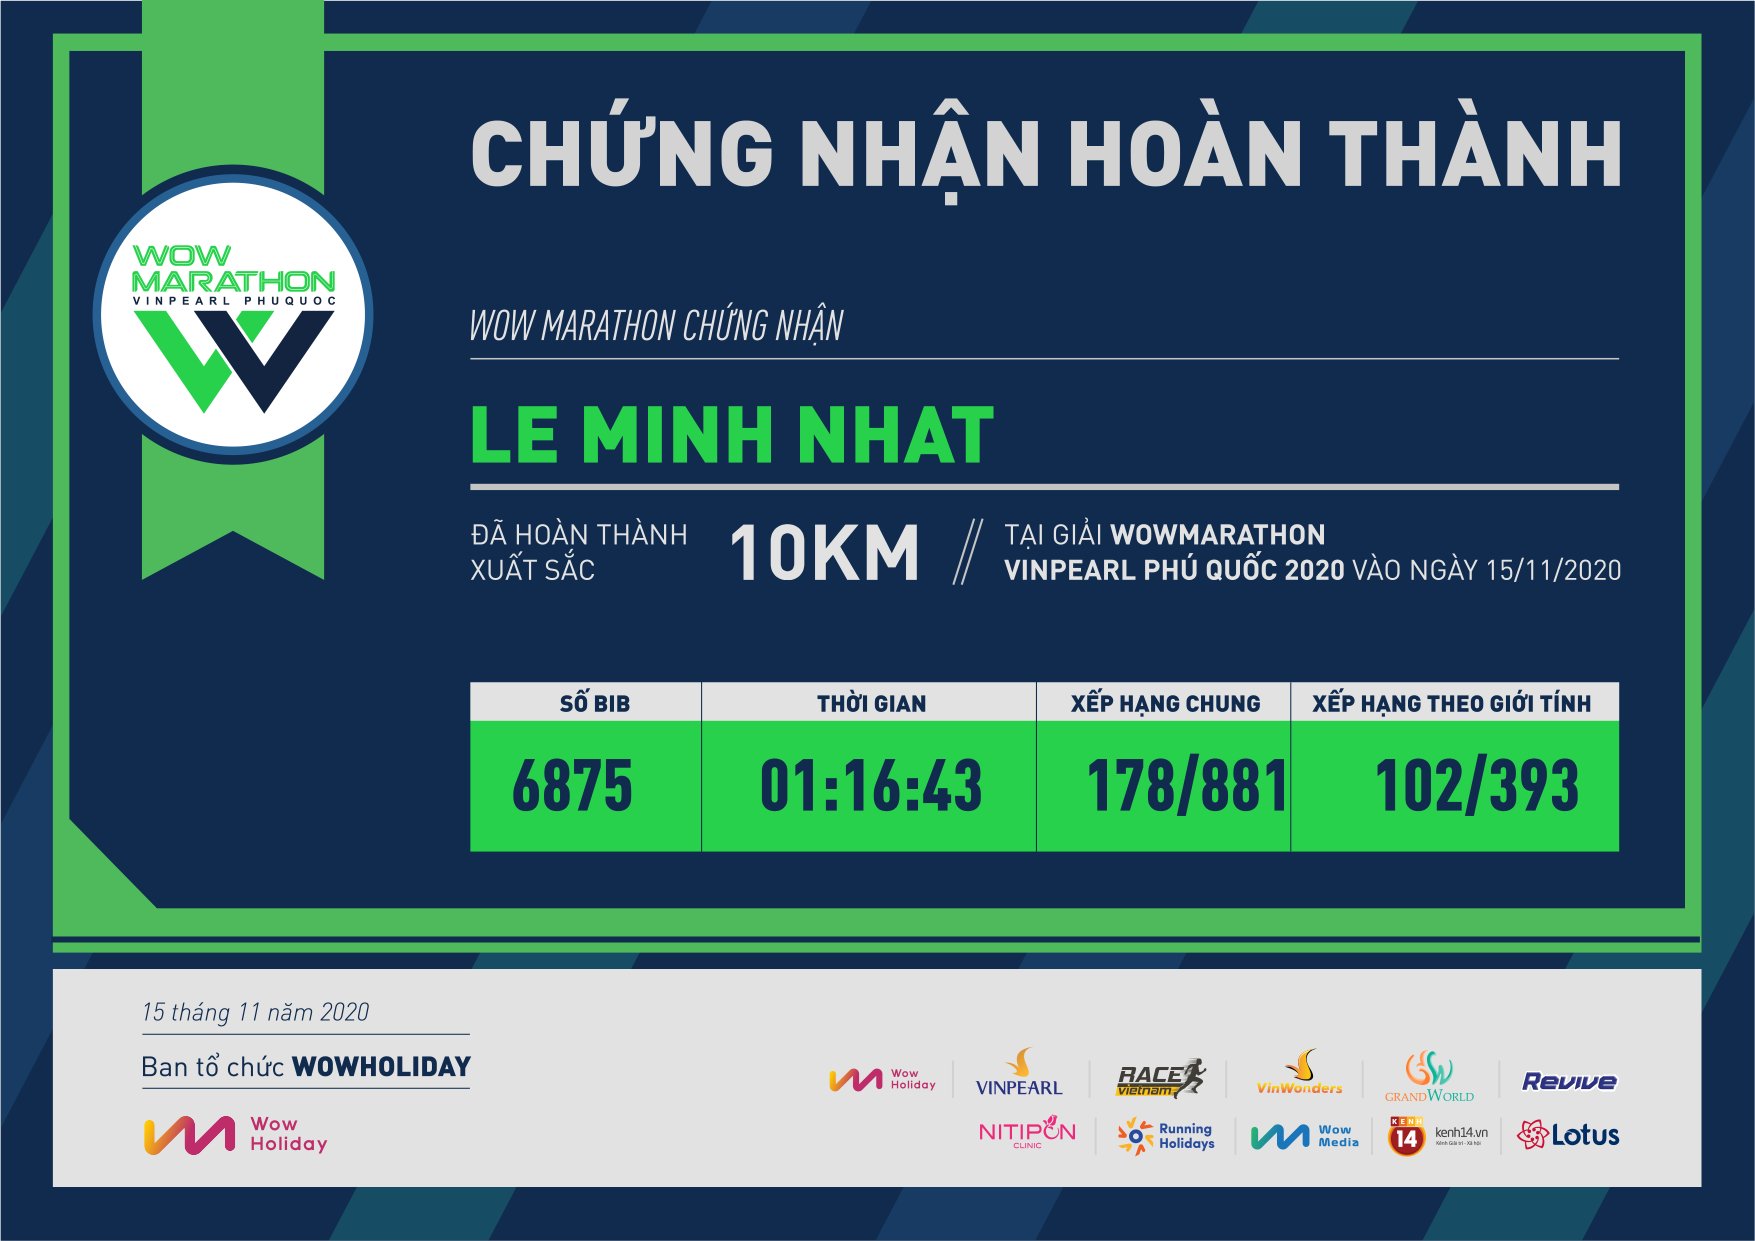 6875 - Le Minh Nhat